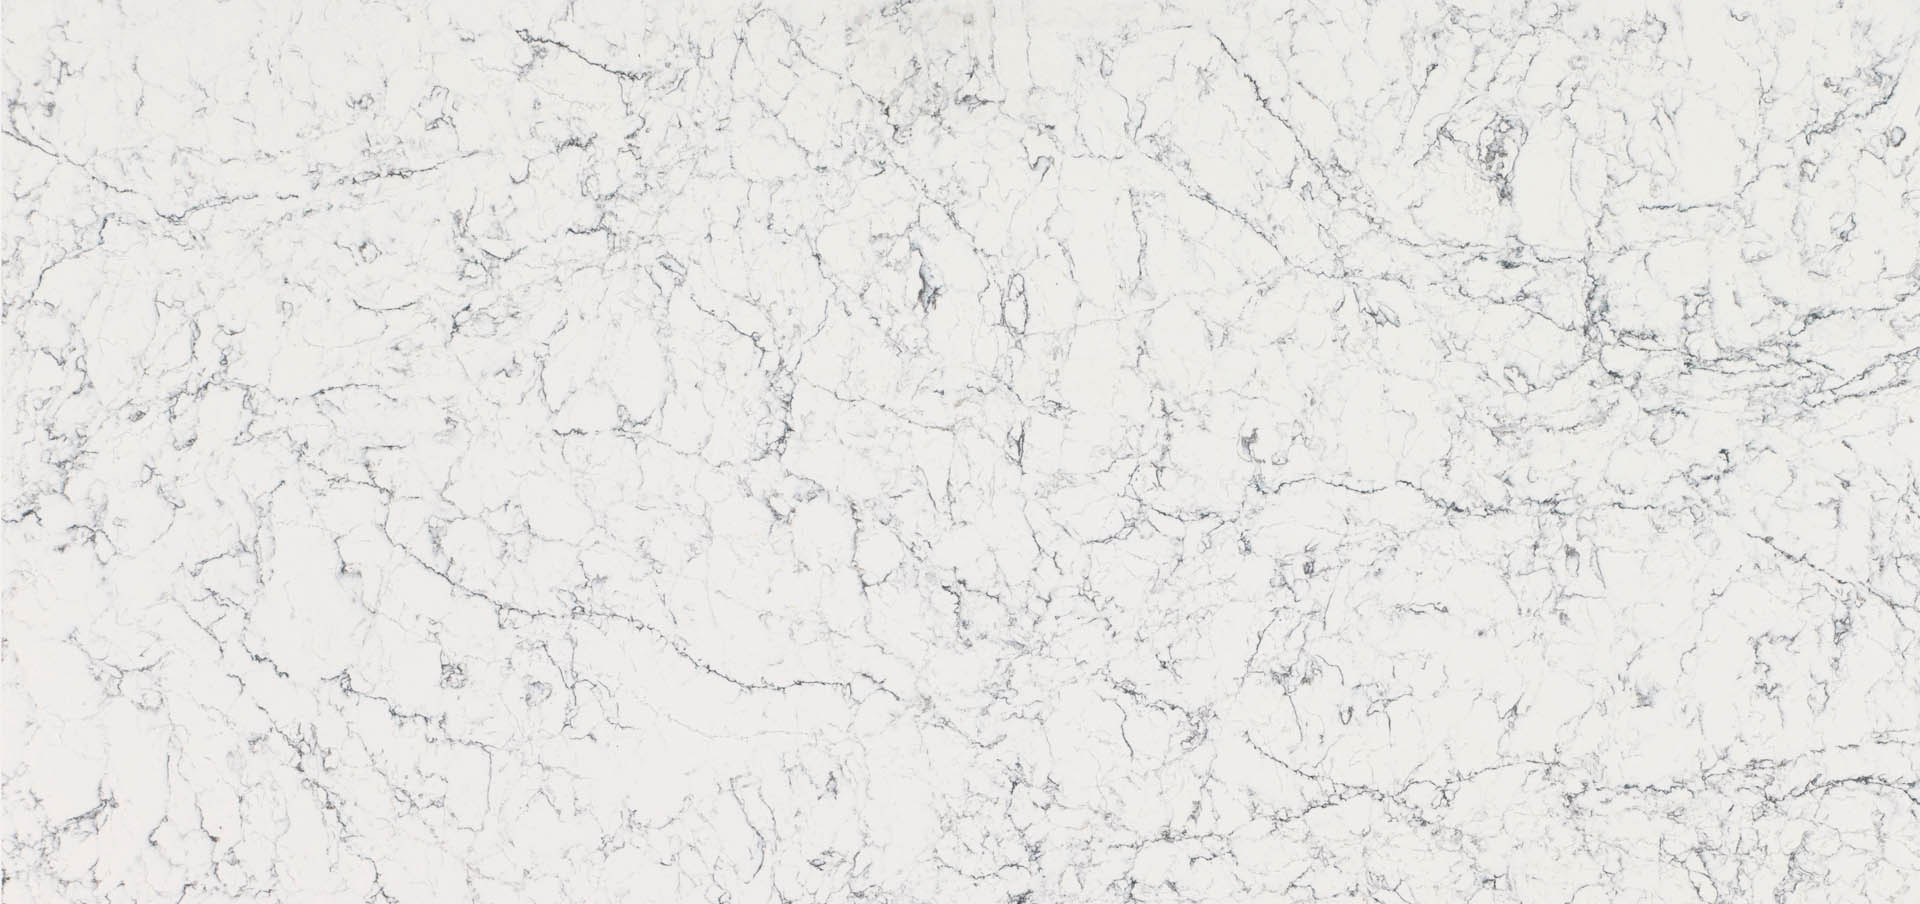 Caesarstone White Attica quartz worktops slab for your